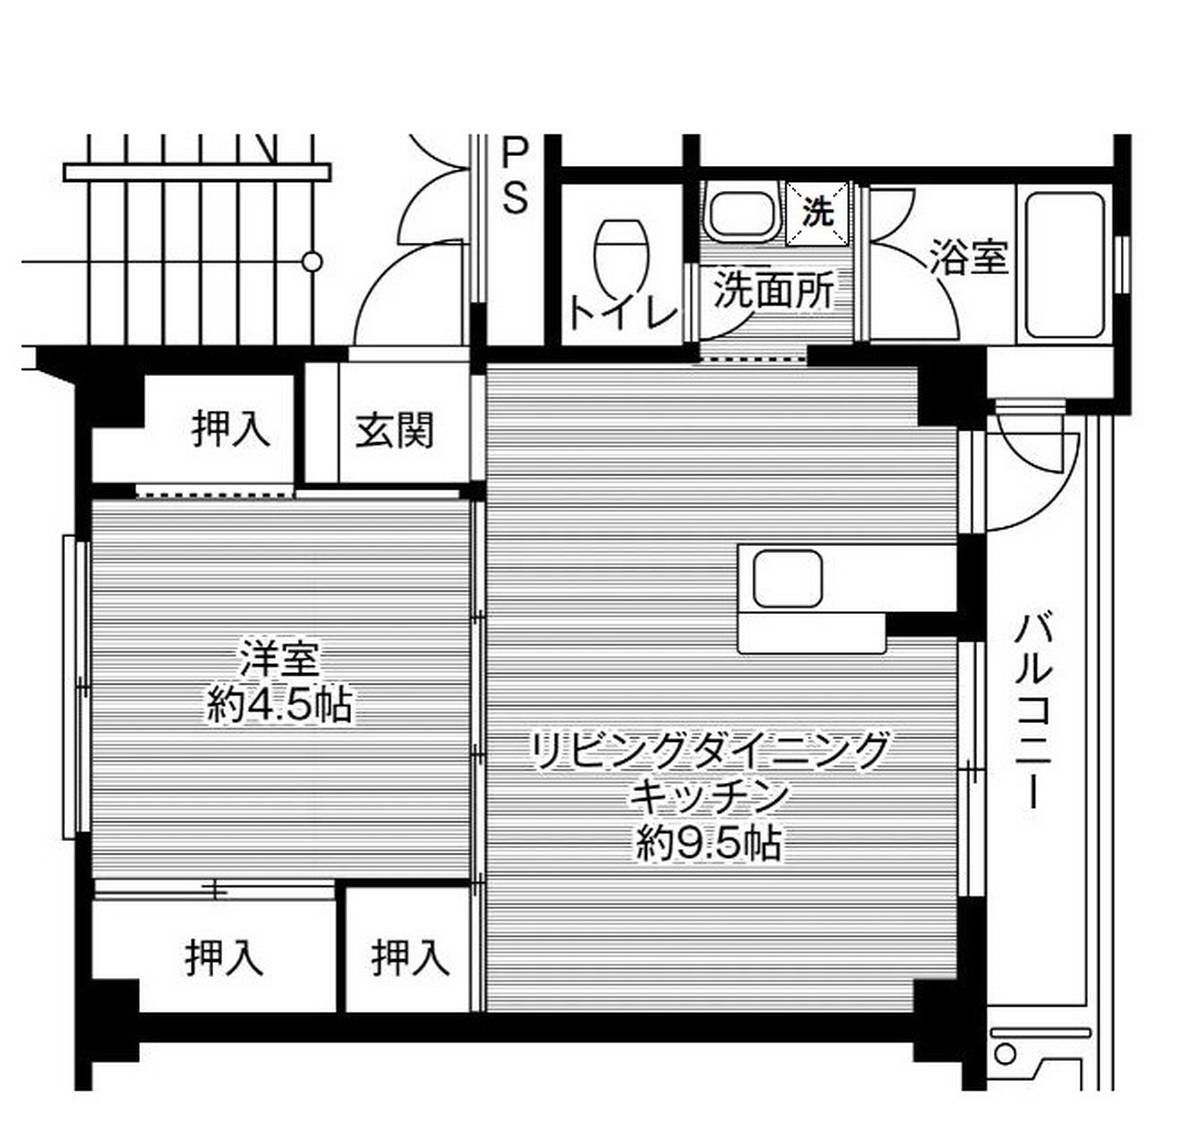 Sơ đồ phòng 1LDK của Village House Misono ở Oita-shi